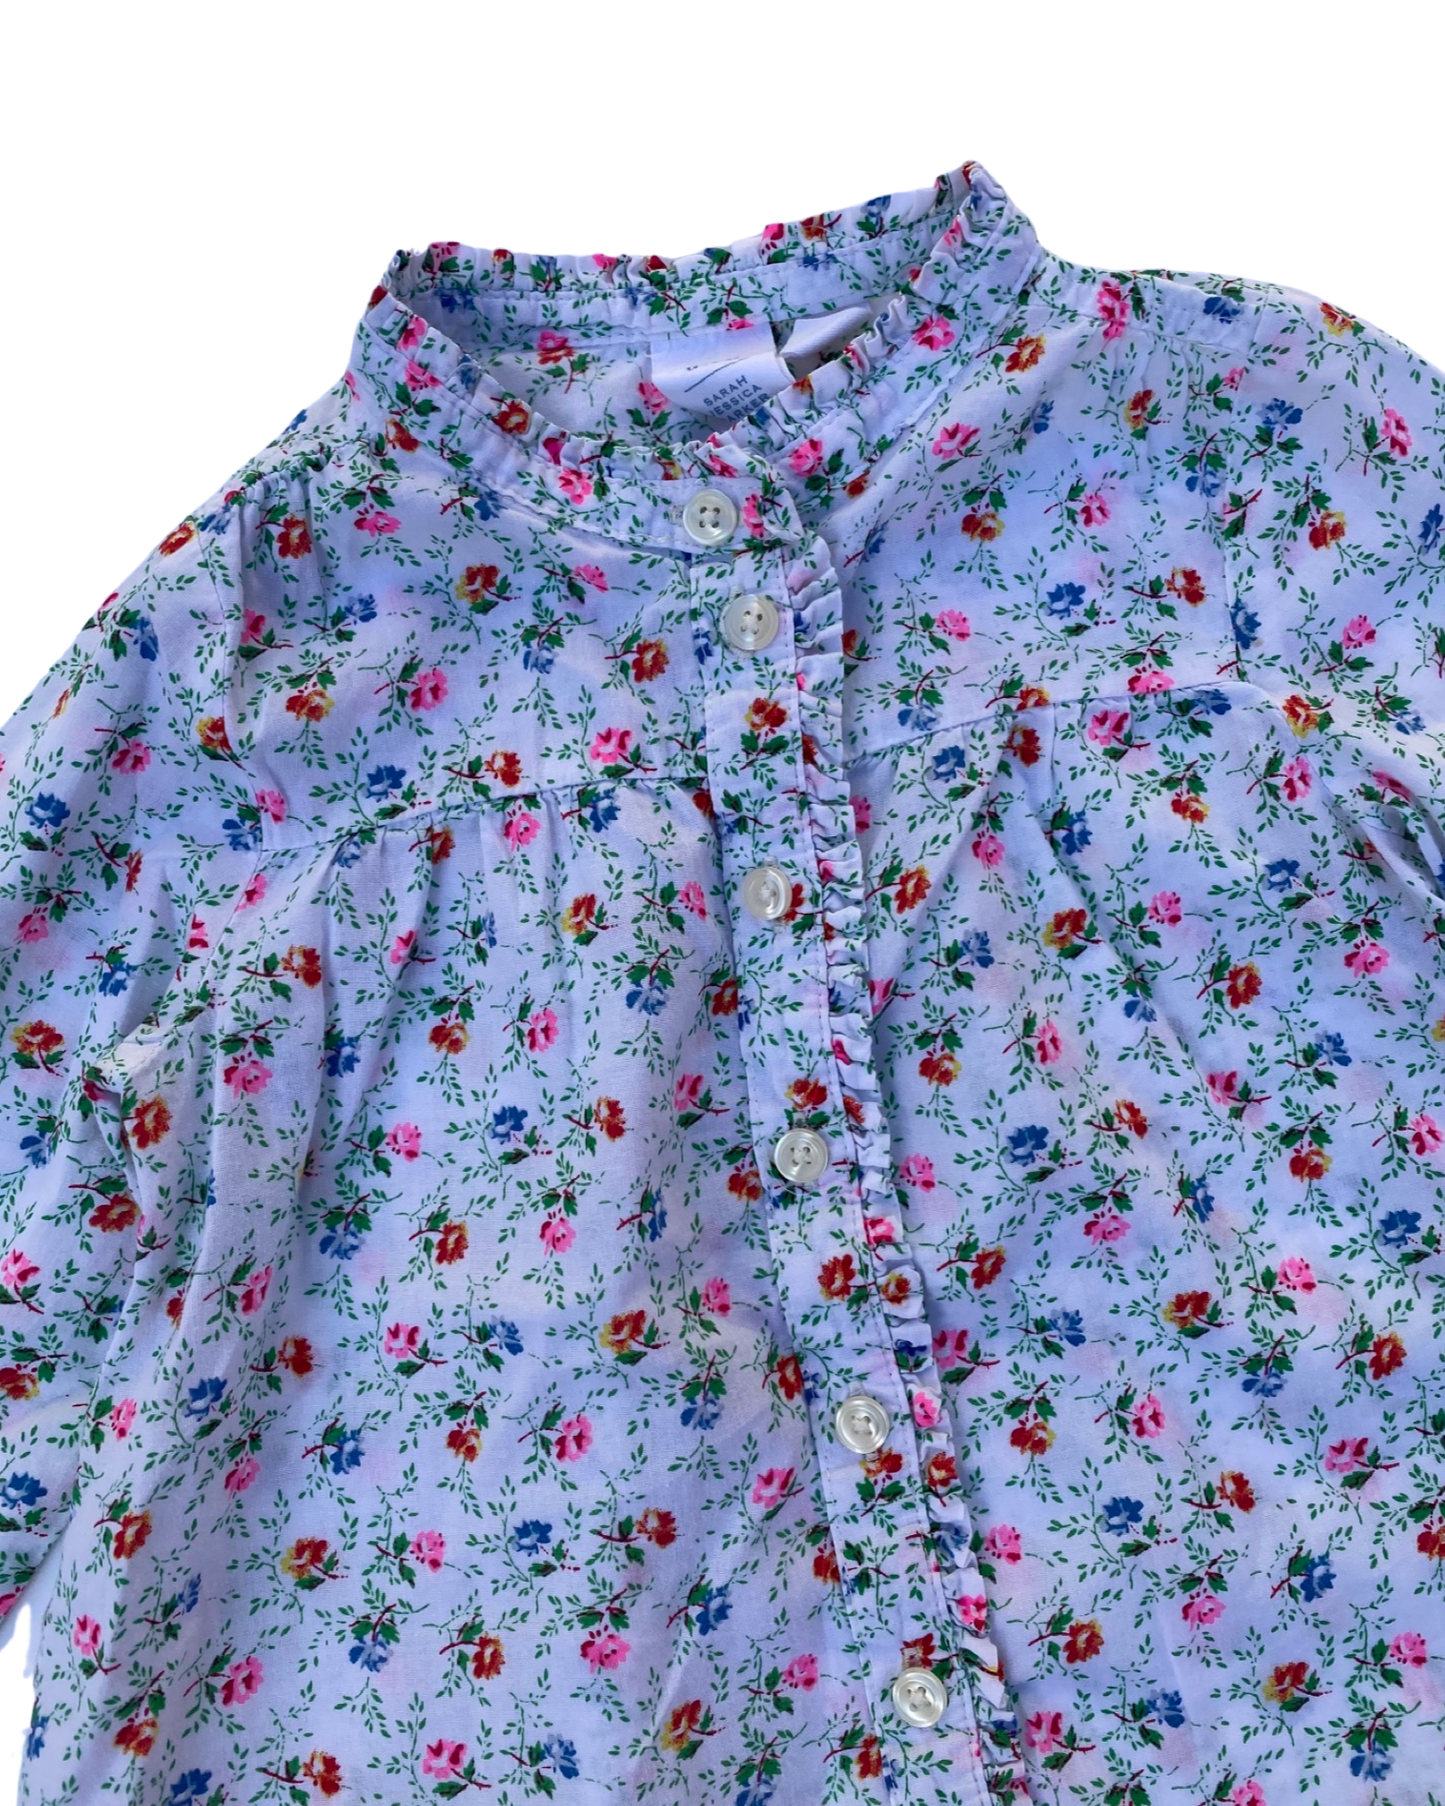 Gap x SJP floral print blouse (size 1-2yrs)